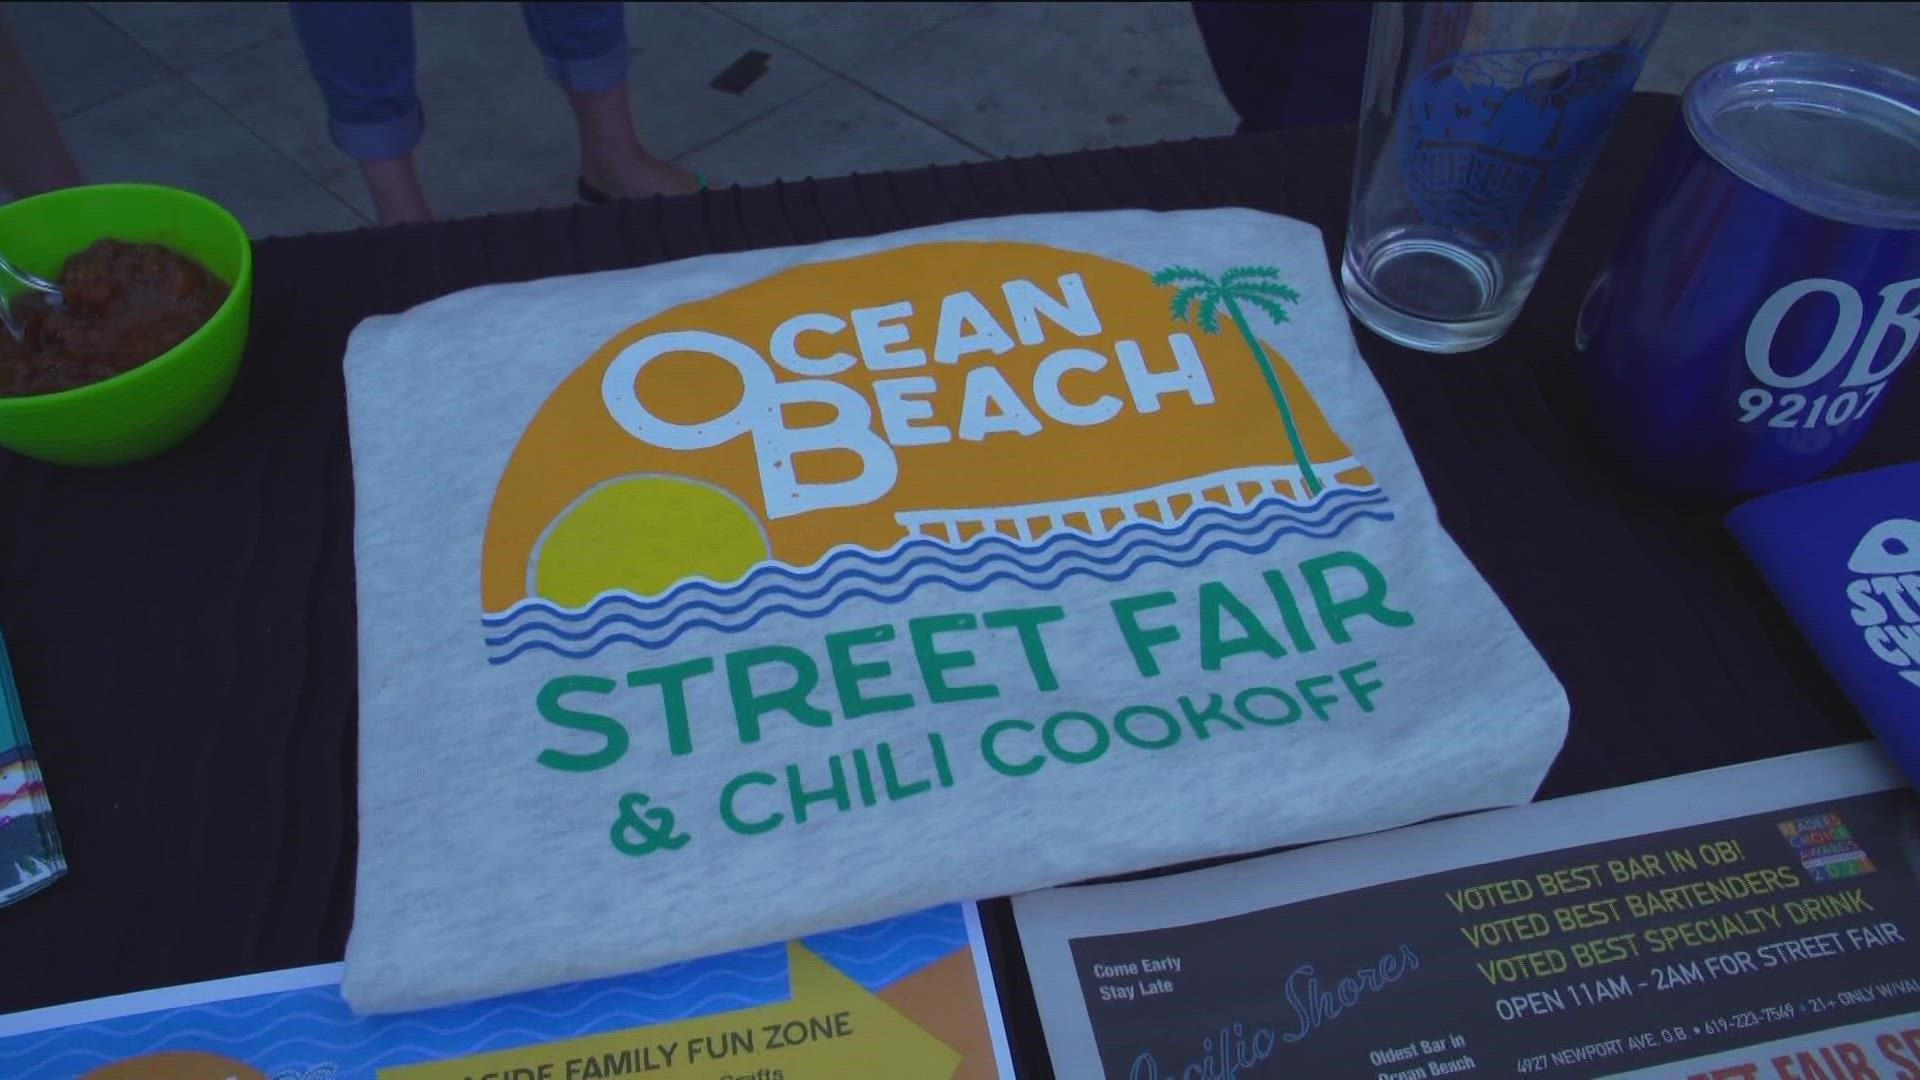 The 42nd Annual Ocean Beach Street Fair & Chili CookOff returns June